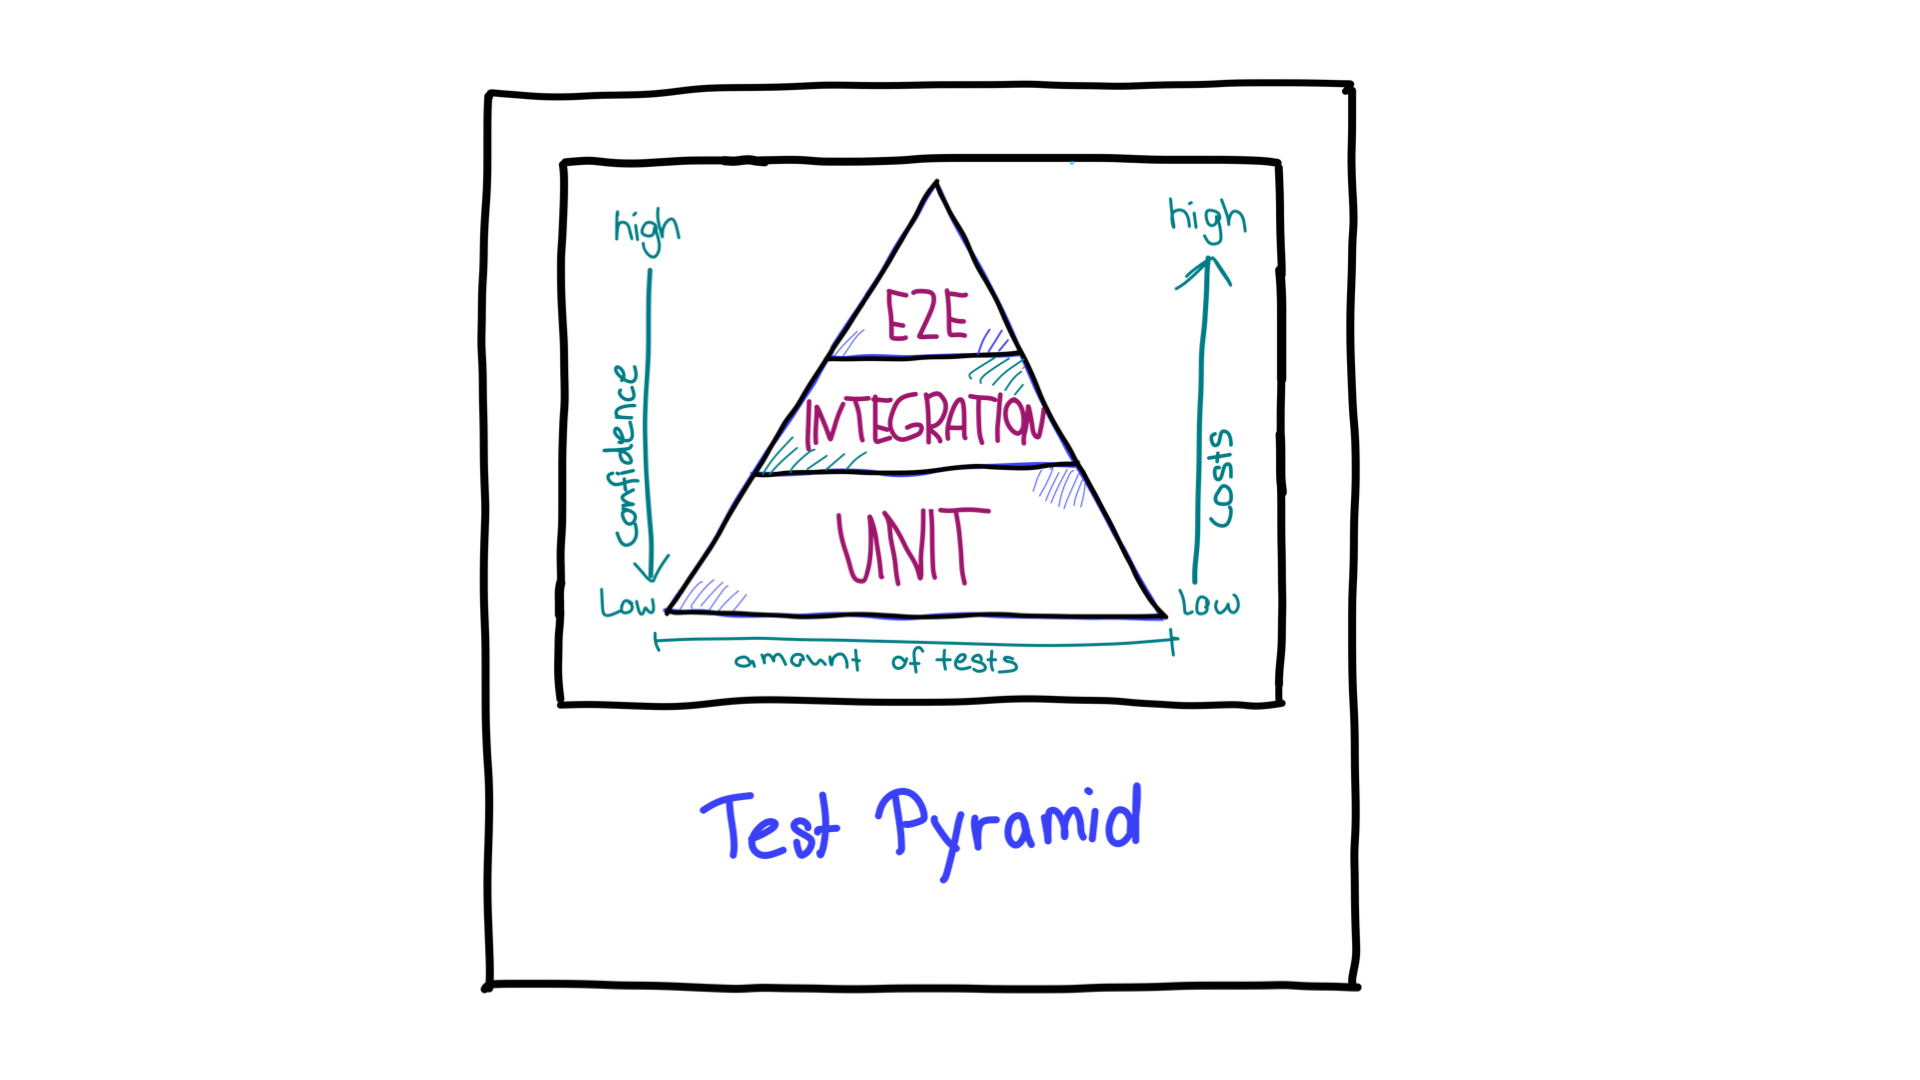 带有箭头的测试金字塔表示不同测试类型所需的置信度和资源方向。